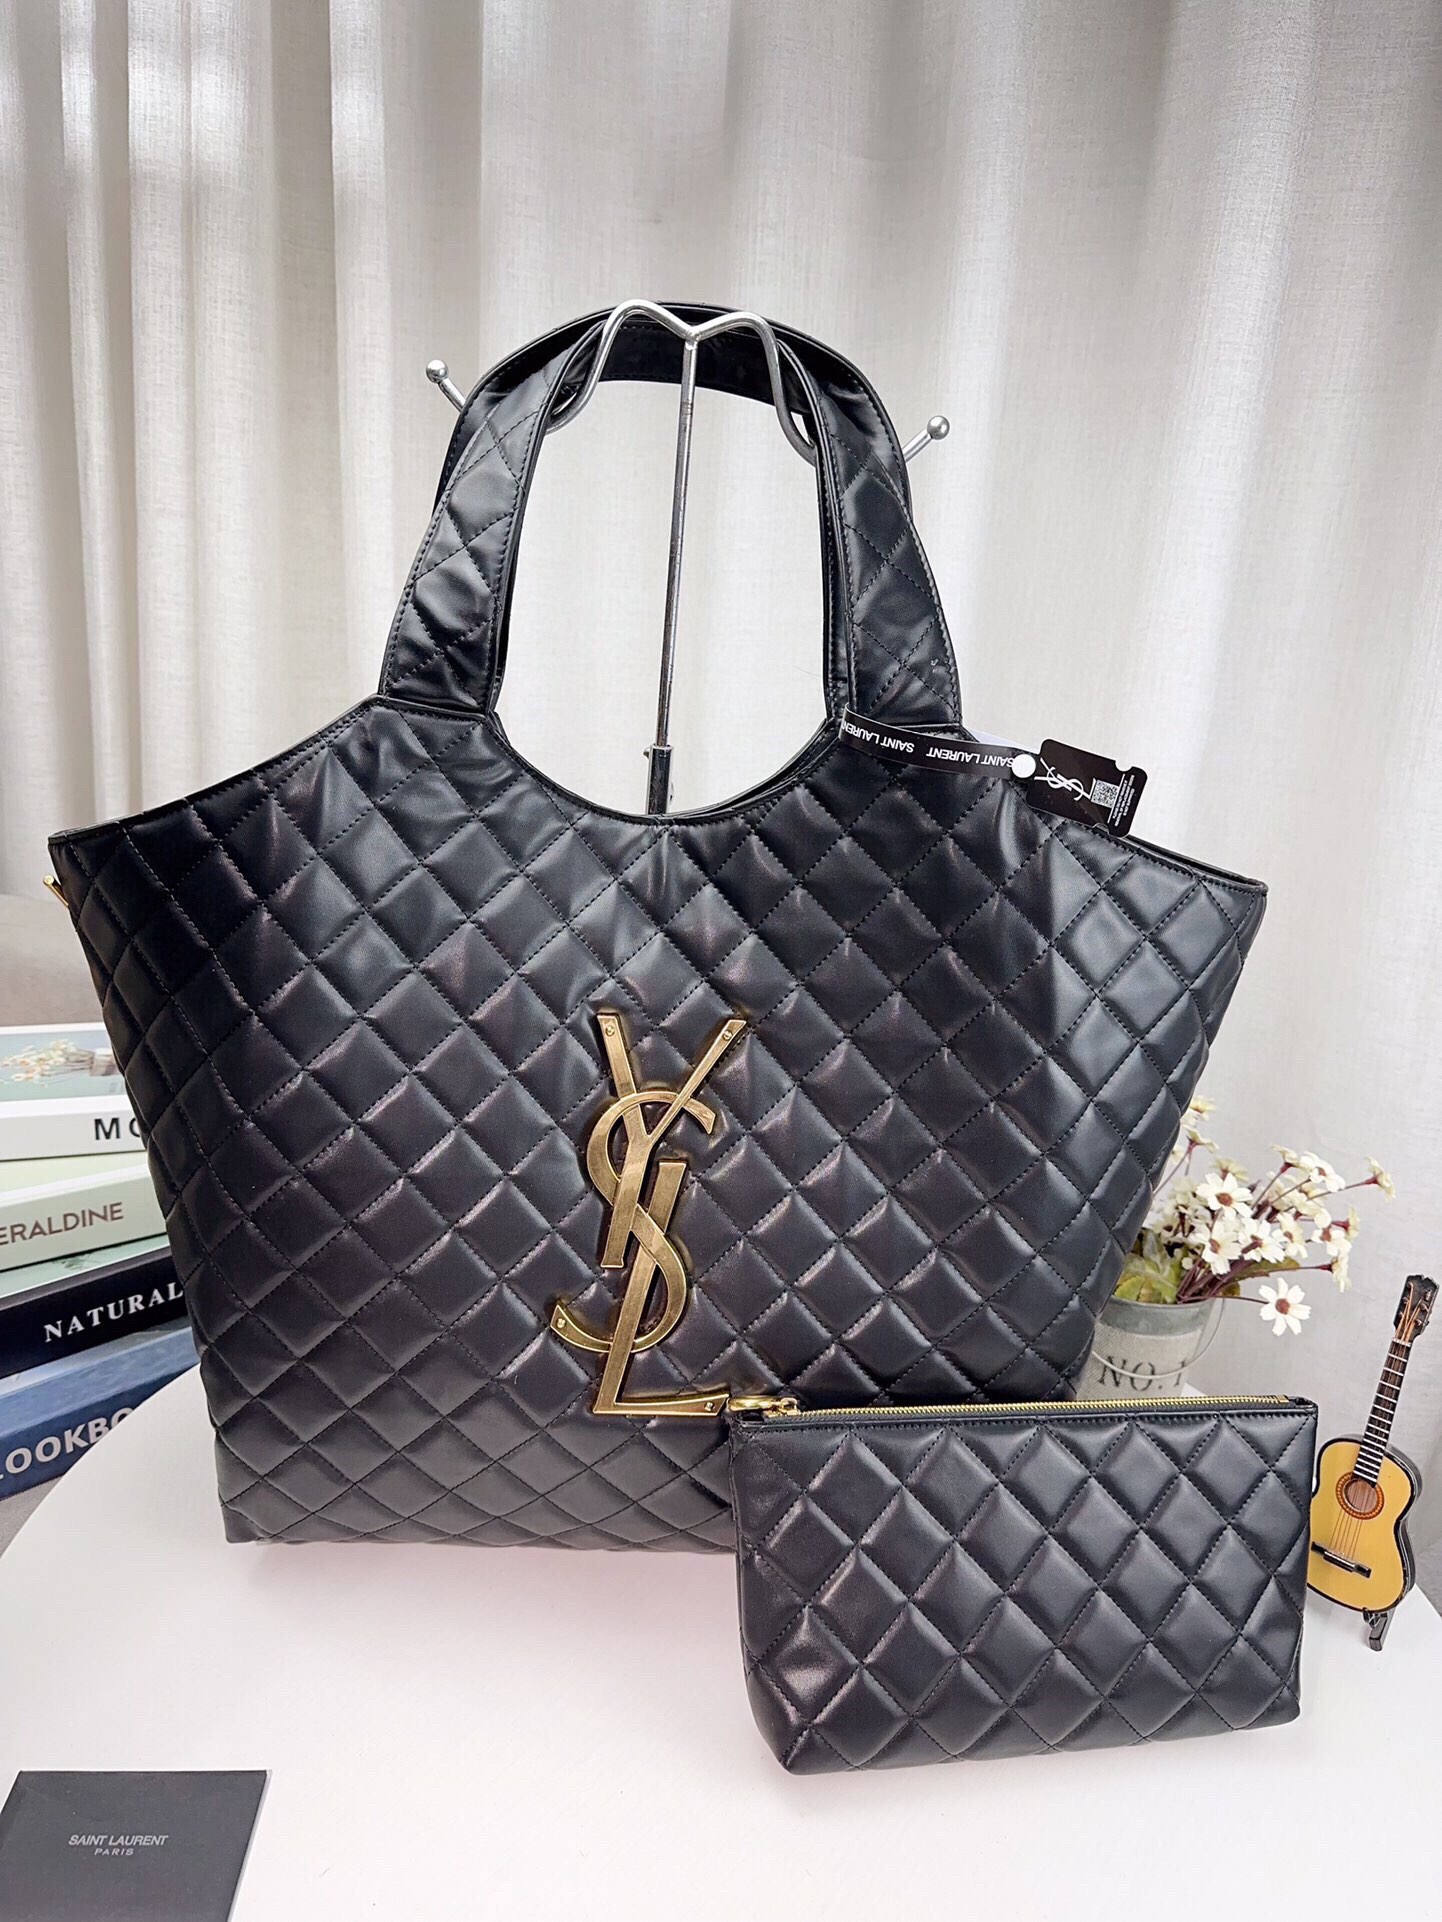 Yves Saint Laurent Handbags Tote Bags Sheepskin Fashion